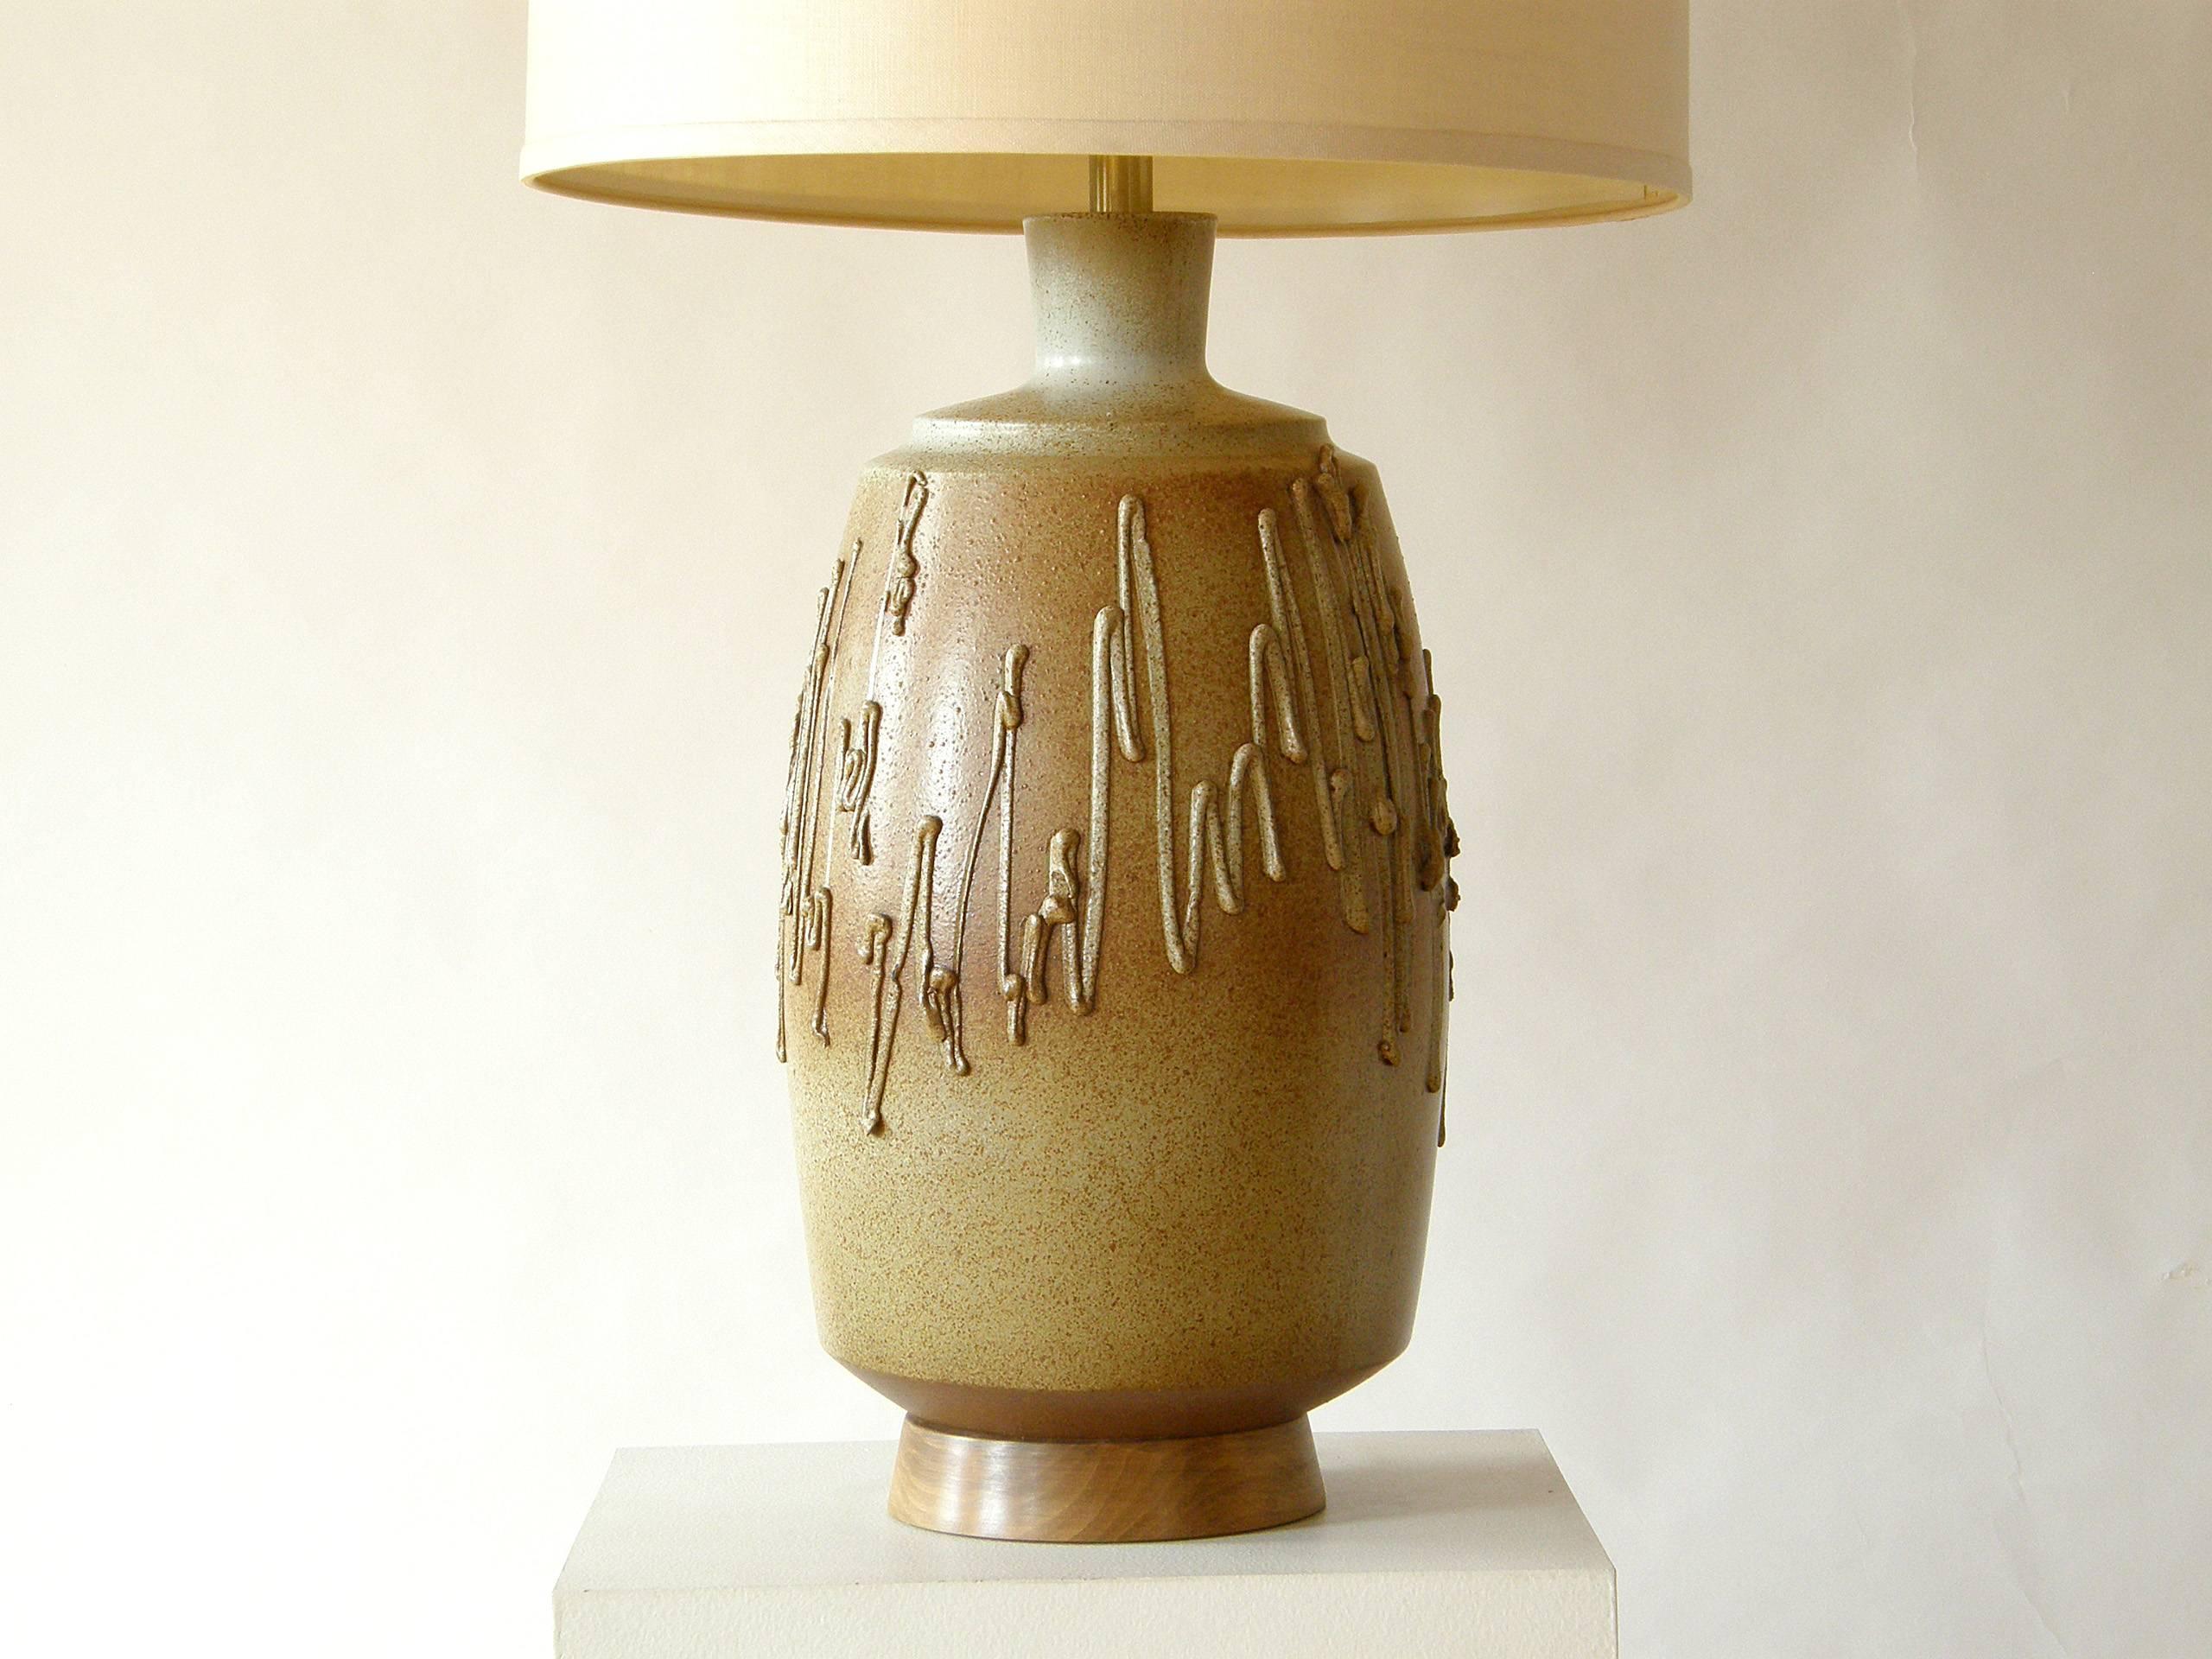 Lampe de table en céramique conçue par David Cressey pour Architectural Pottery. Il présente une glaçure brune mouchetée sur une couleur de base crémeuse et un traitement de surface texturé de gribouillis librement appliqués.

L'abat-jour illustré